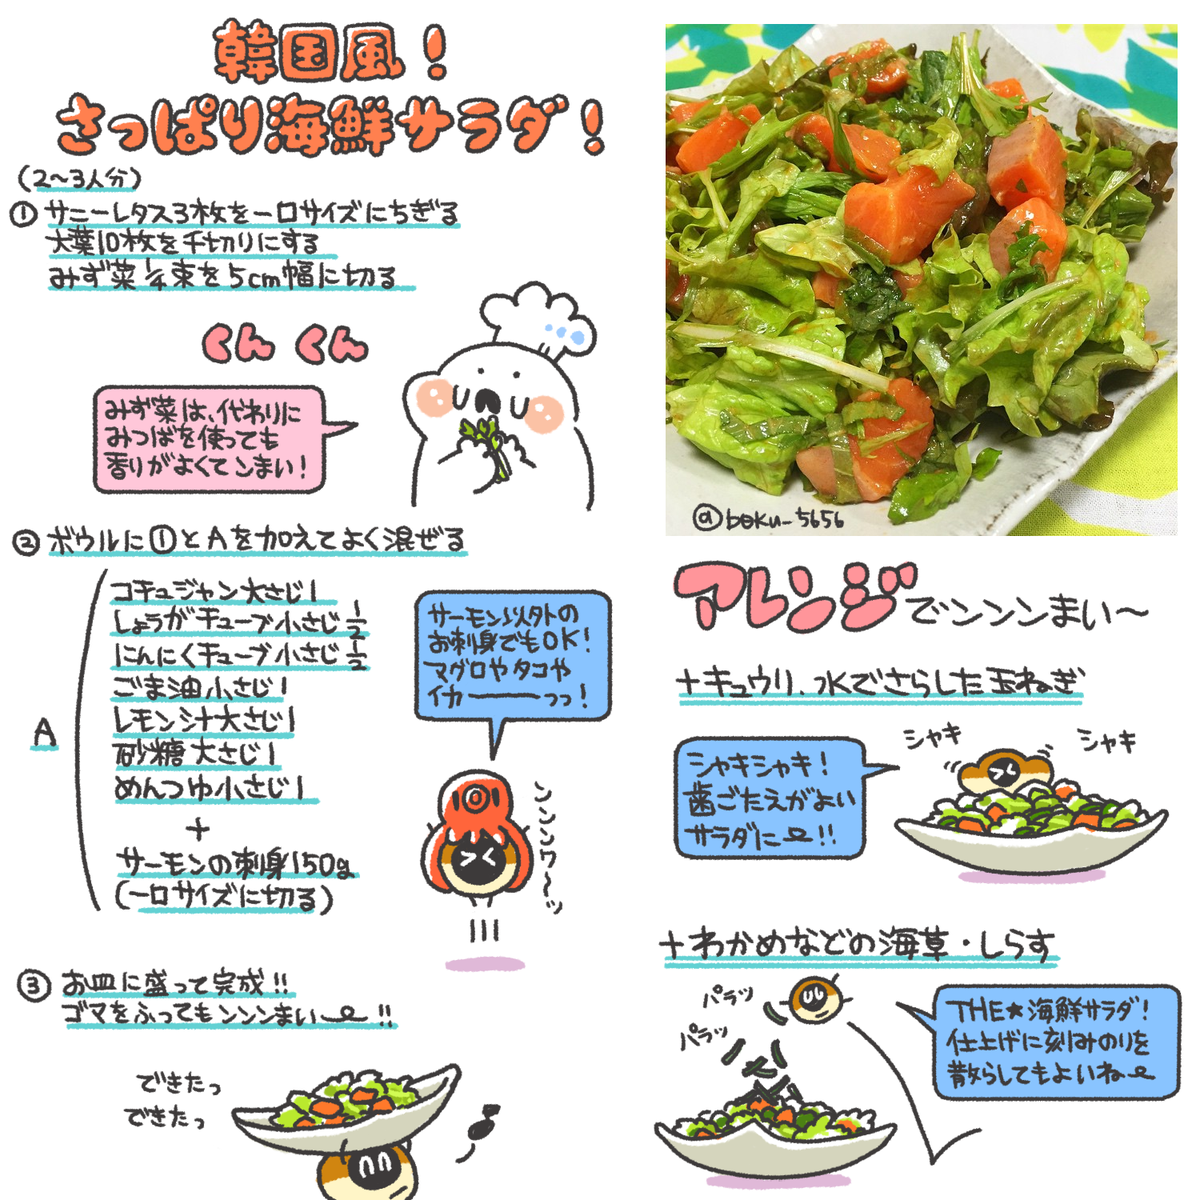 ぼく いらすと料理 Di Twitter 韓国風 さっぱり海鮮サラダのレシピまとめました Oo Http T Co Wkyivrgkak Twitter